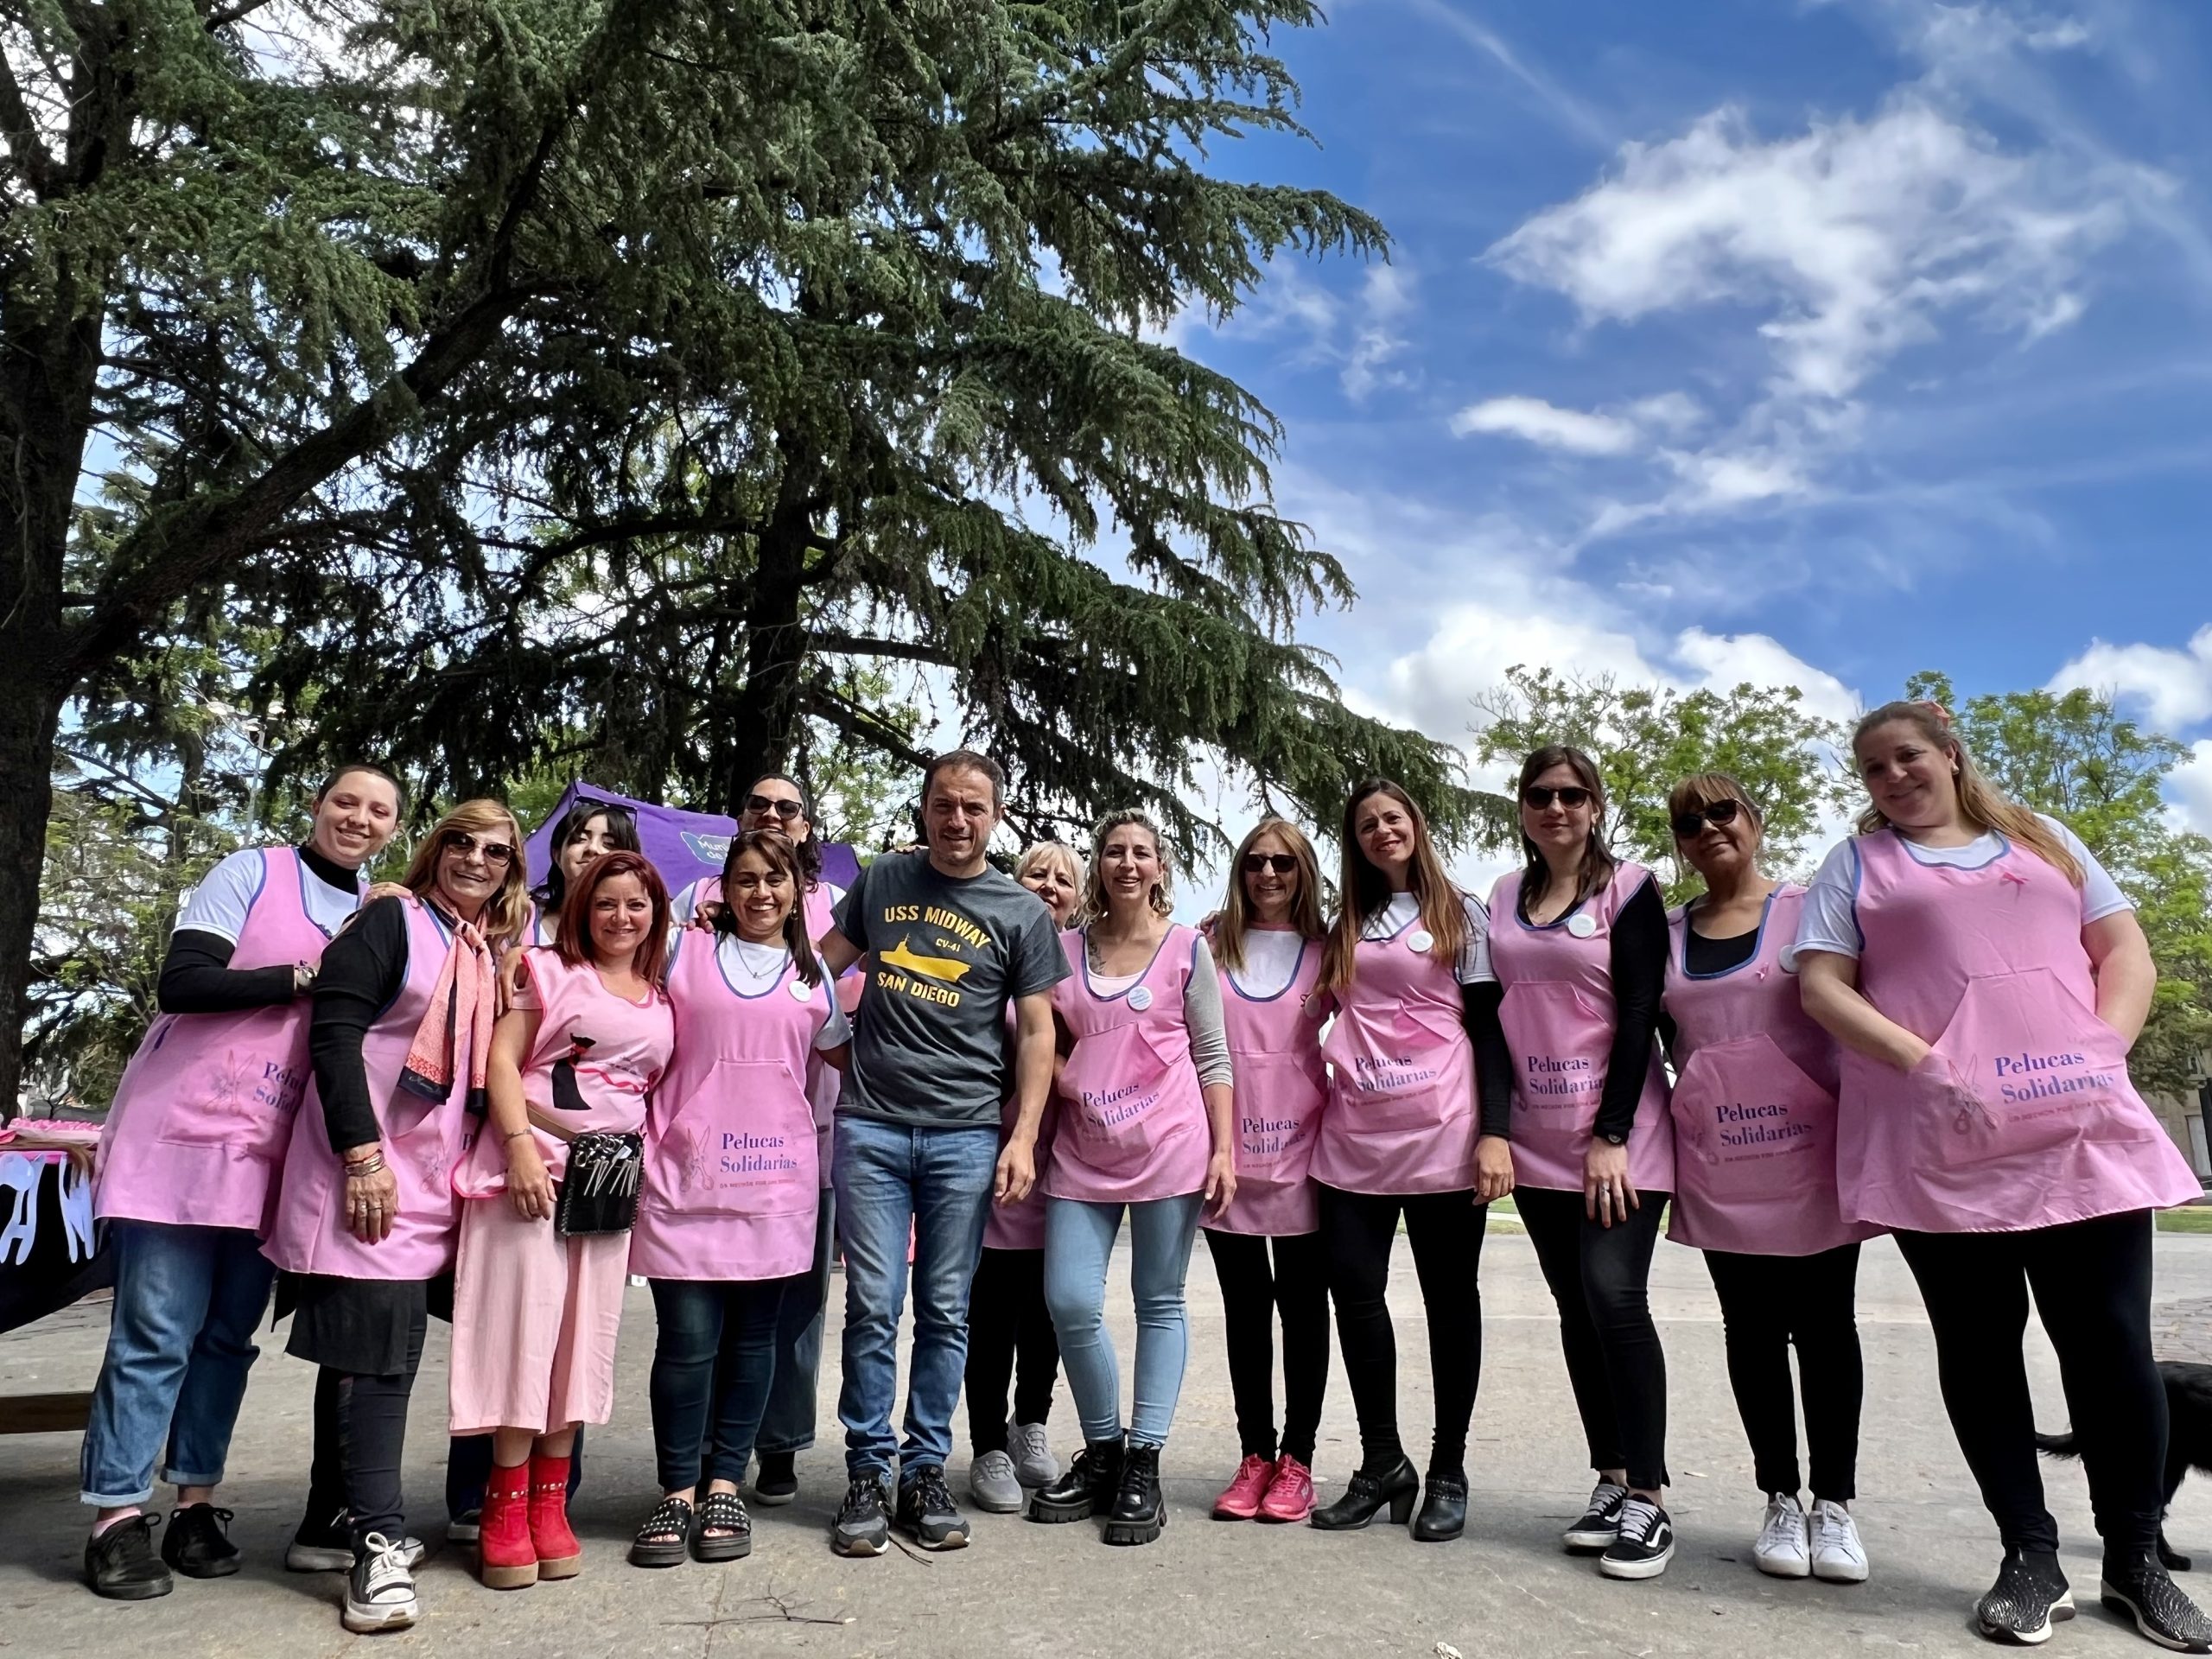 El Intendente acompañó la jornada de concientización sobre el Cáncer de mama impulsada por Pelucas Solidarias